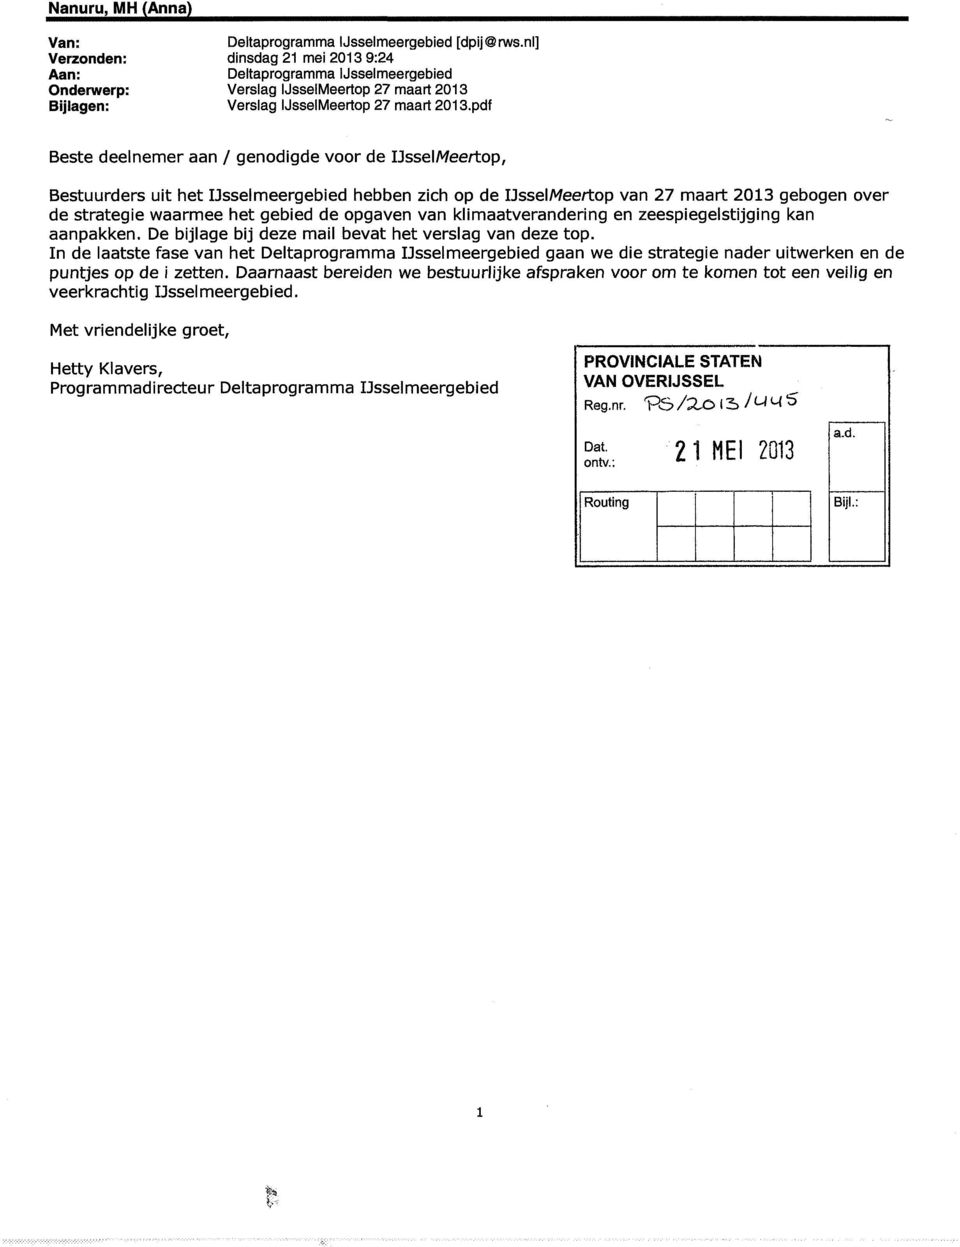 pdf Beste deelnemer aan / genodigde voor de IJsselMeertop, Bestuurders uit het IJsselmeergebied hebben zich op de IJsselMeertop van 27 maart 2013 gebogen over de strategie waarmee het gebied de